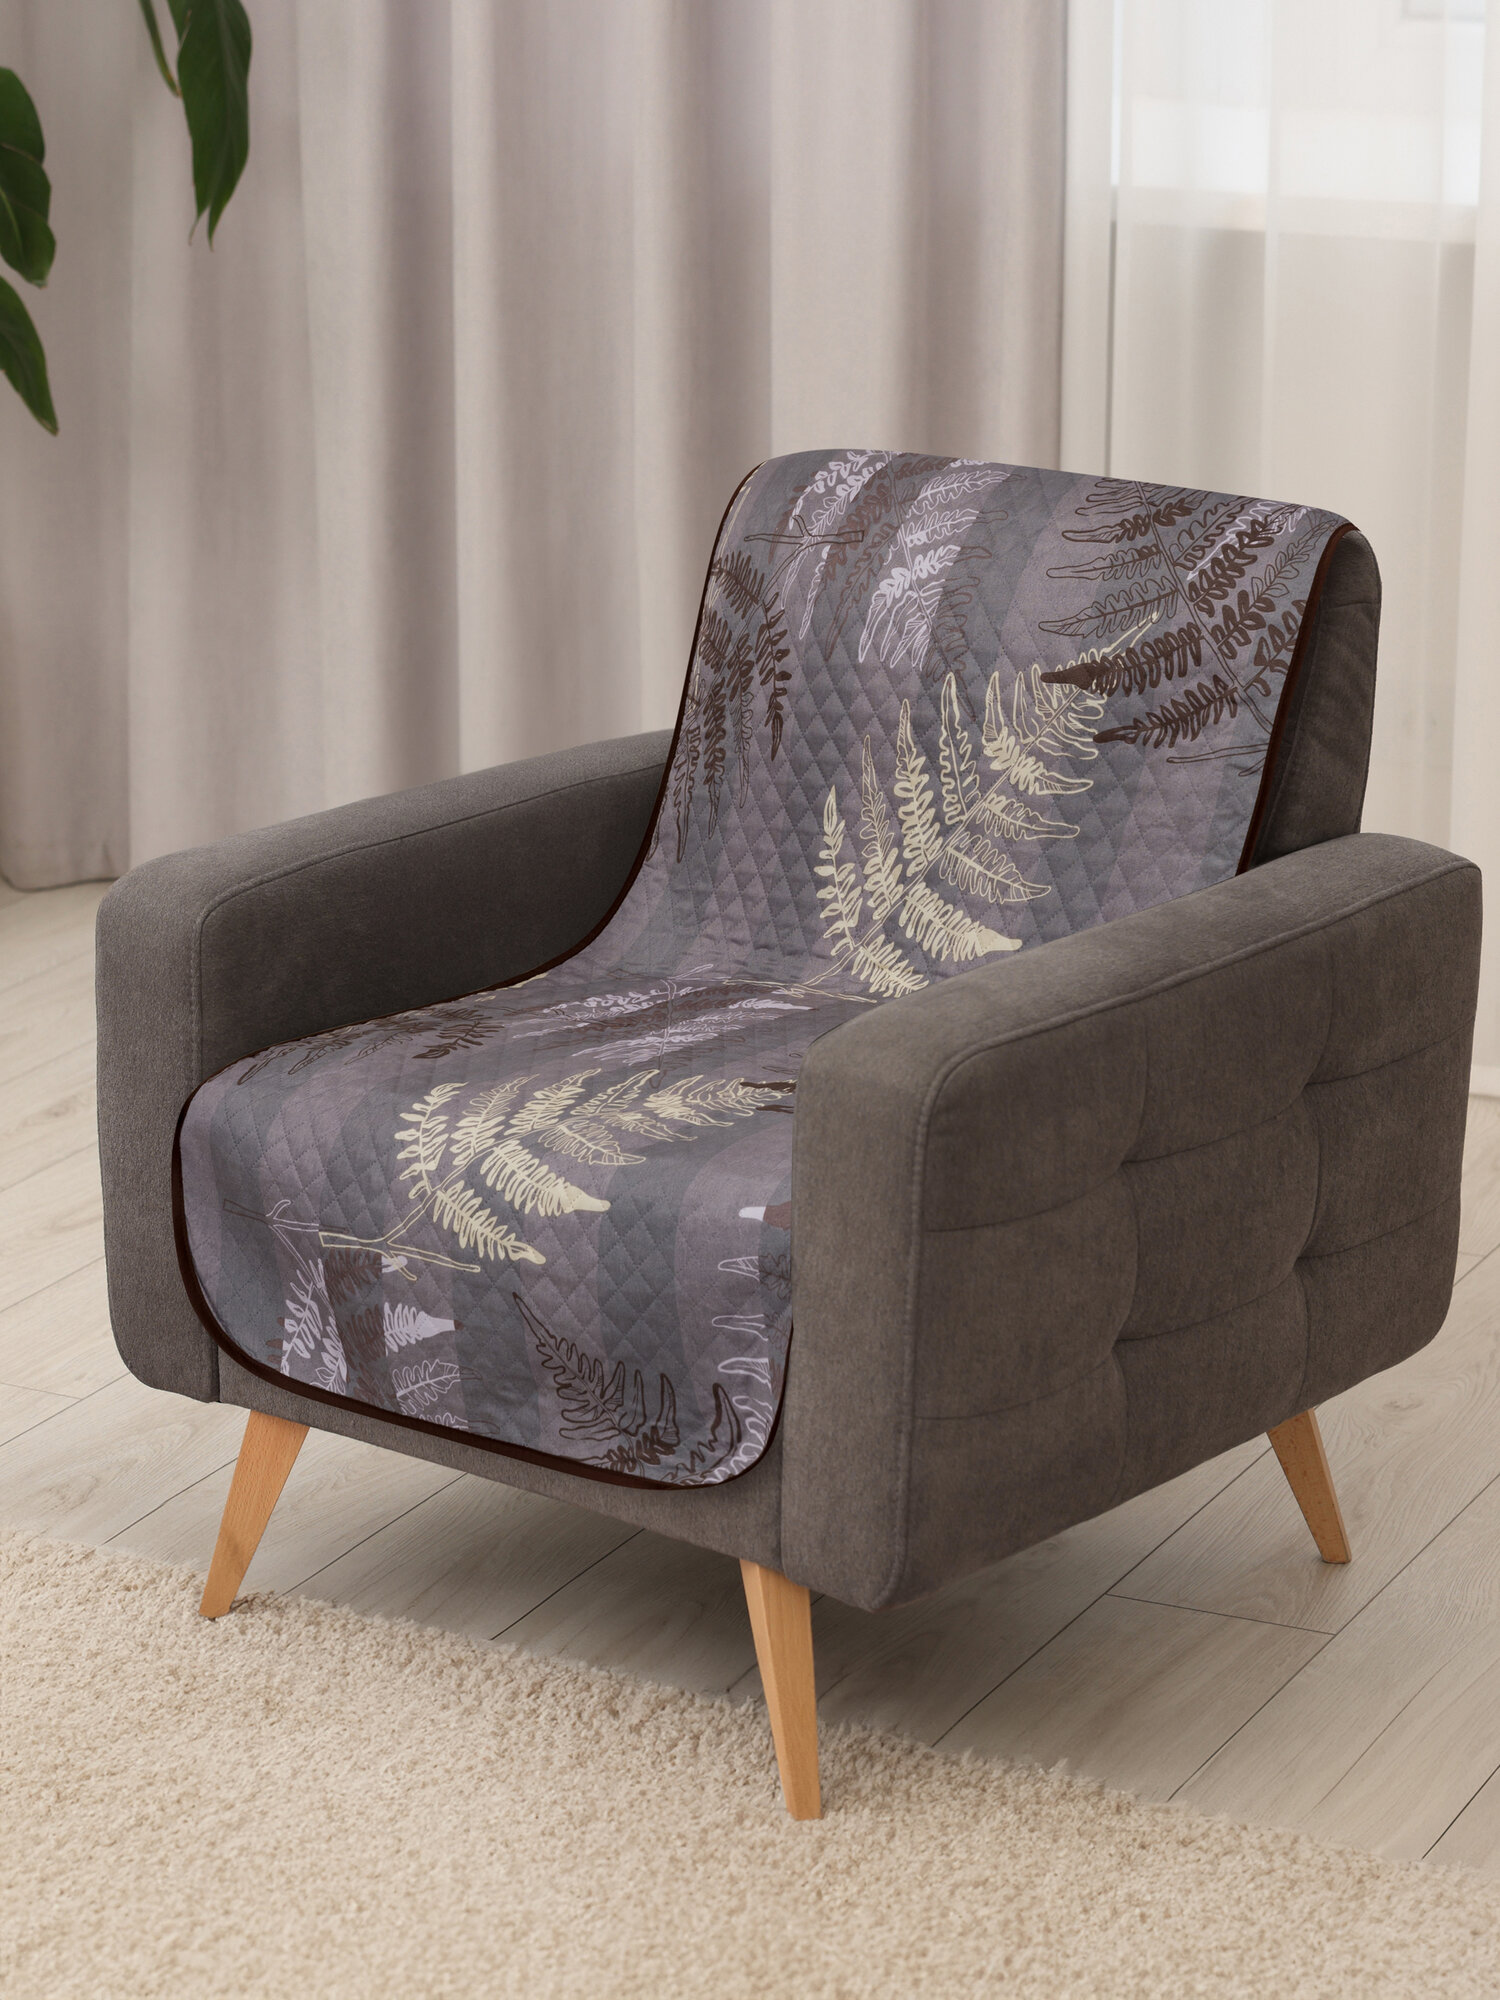 Покрывало накидка на кресло, Вселенная текстиля Полисатин № 4150, Ультрастеп 90х160 см